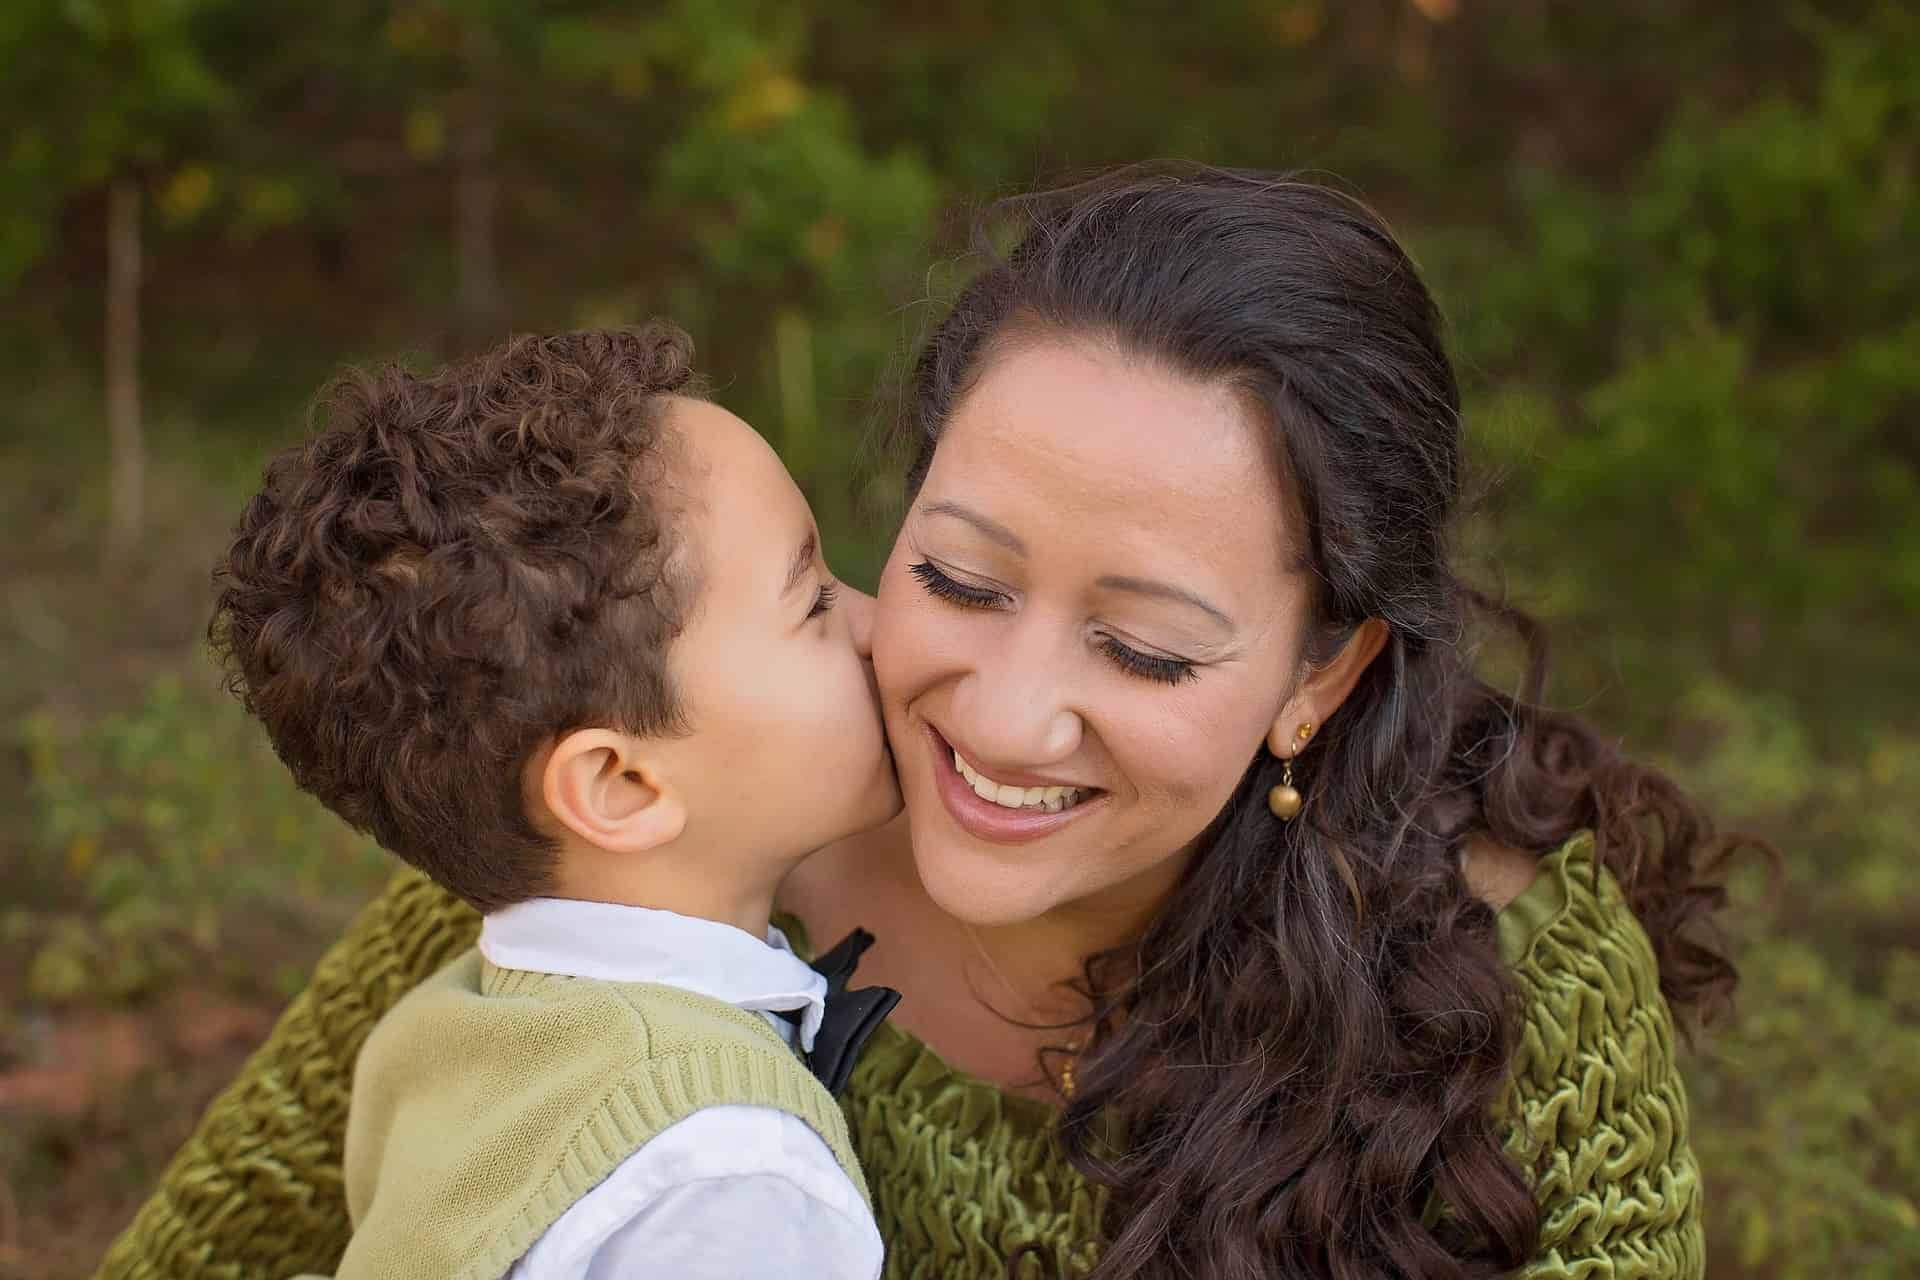 Foto mostra um menino pequeno beijando a sua mãe na bochecha. O afeto é um dos pilares da disciplina positiva, abordagem que visa educar de maneira firme e gentil.